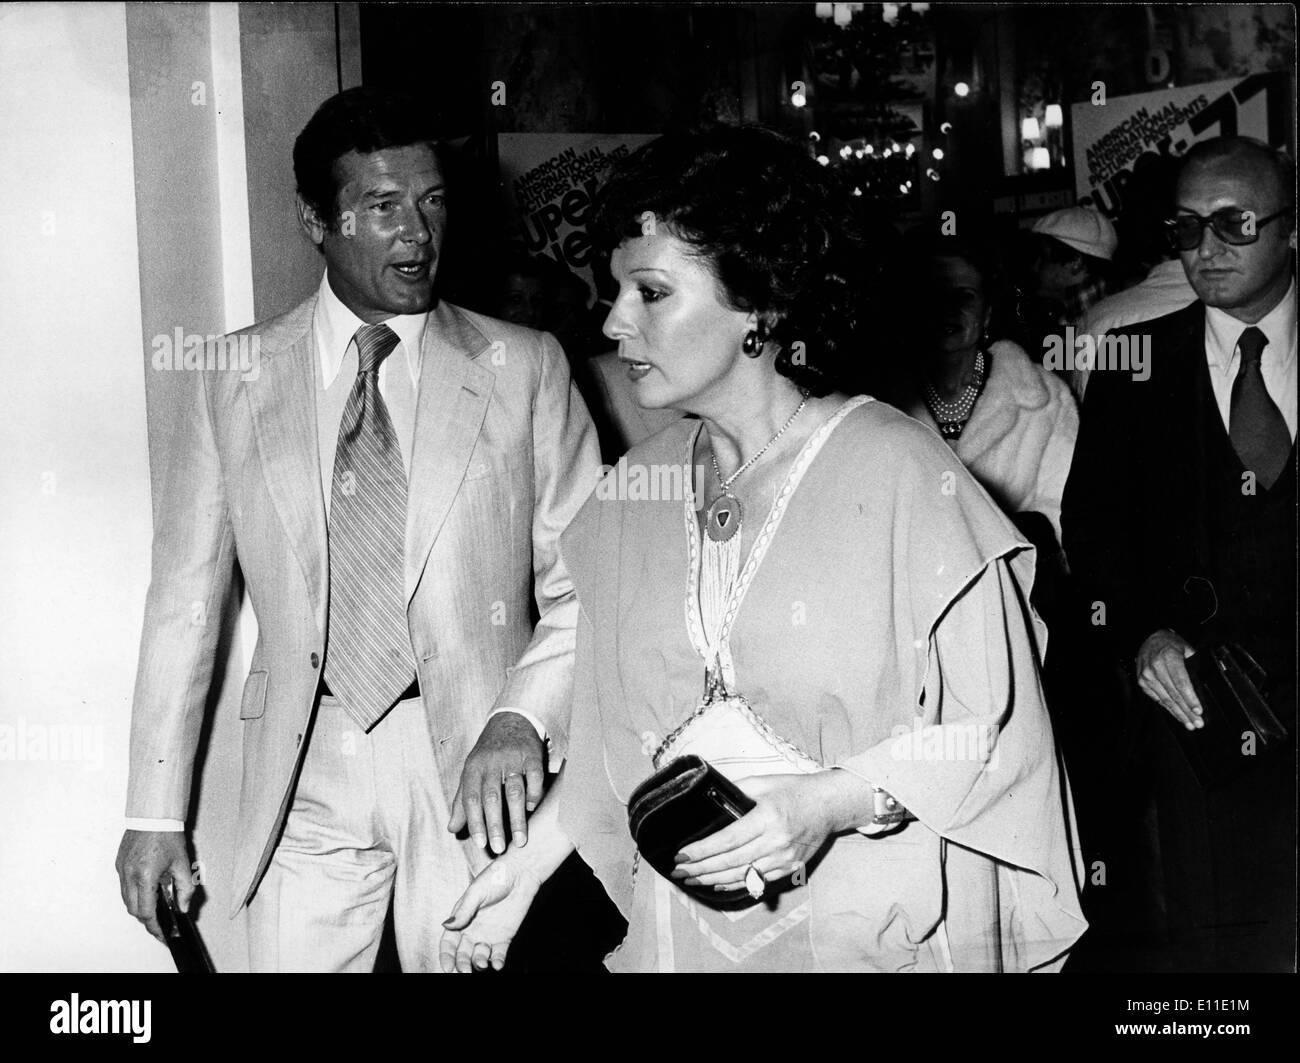 23 mai, 1977 ; Paris, France ; acteur Roger Moore, également connu sous le nom de James Bond 007 au Festival de Cannes avec son épouse LUISA MATTIOLI. (Crédit Image : KEYSTONE/ZUMAPRESS.com) Photos USA Banque D'Images